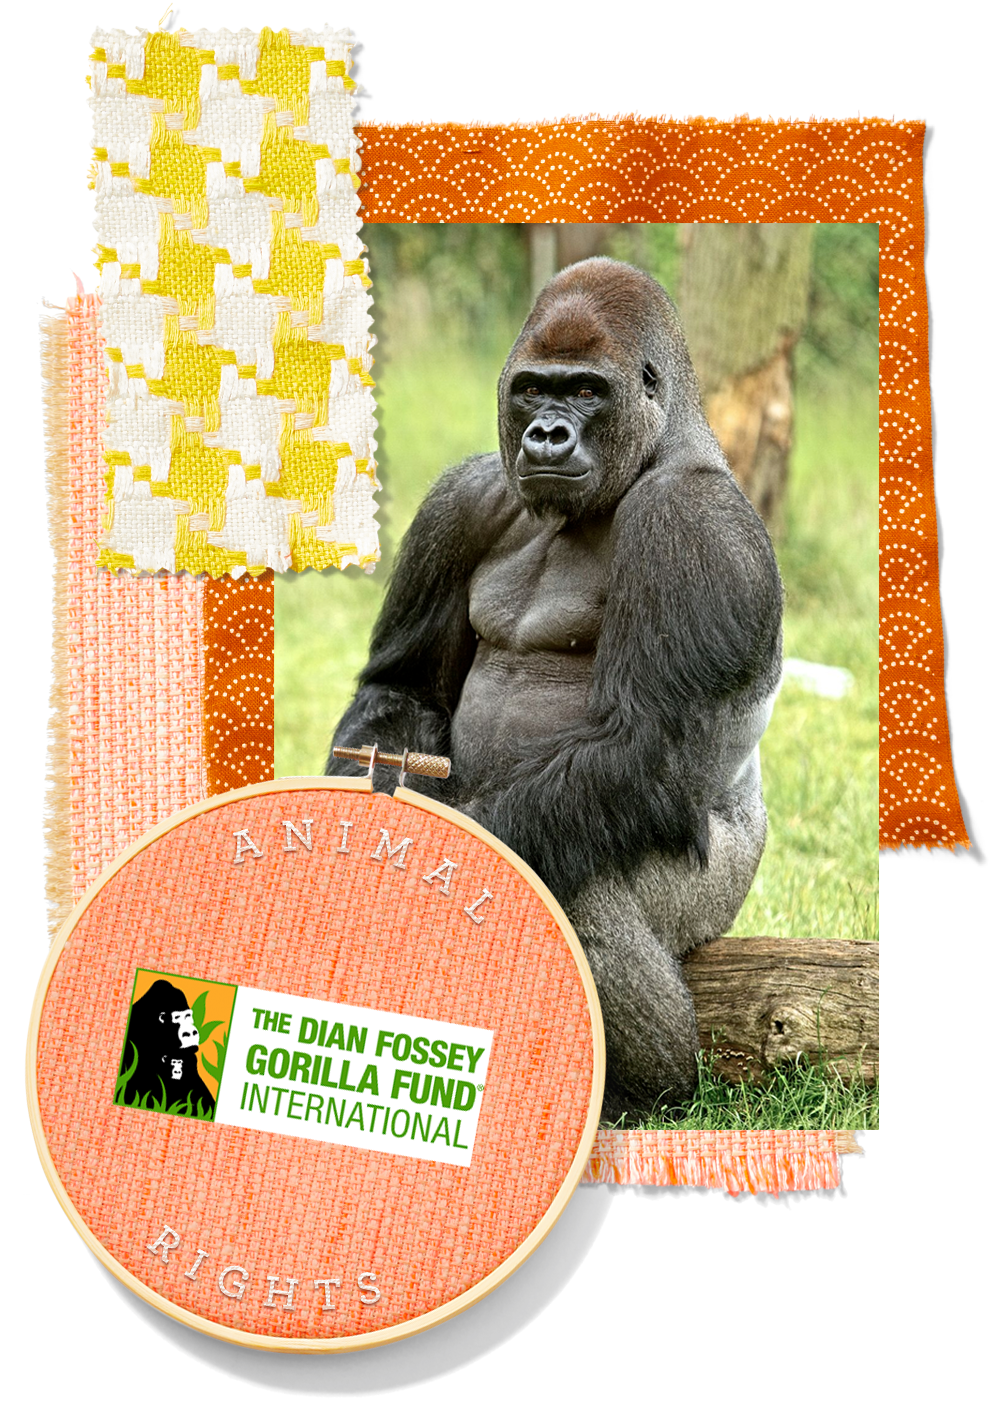 dian fossey gorilla fund international